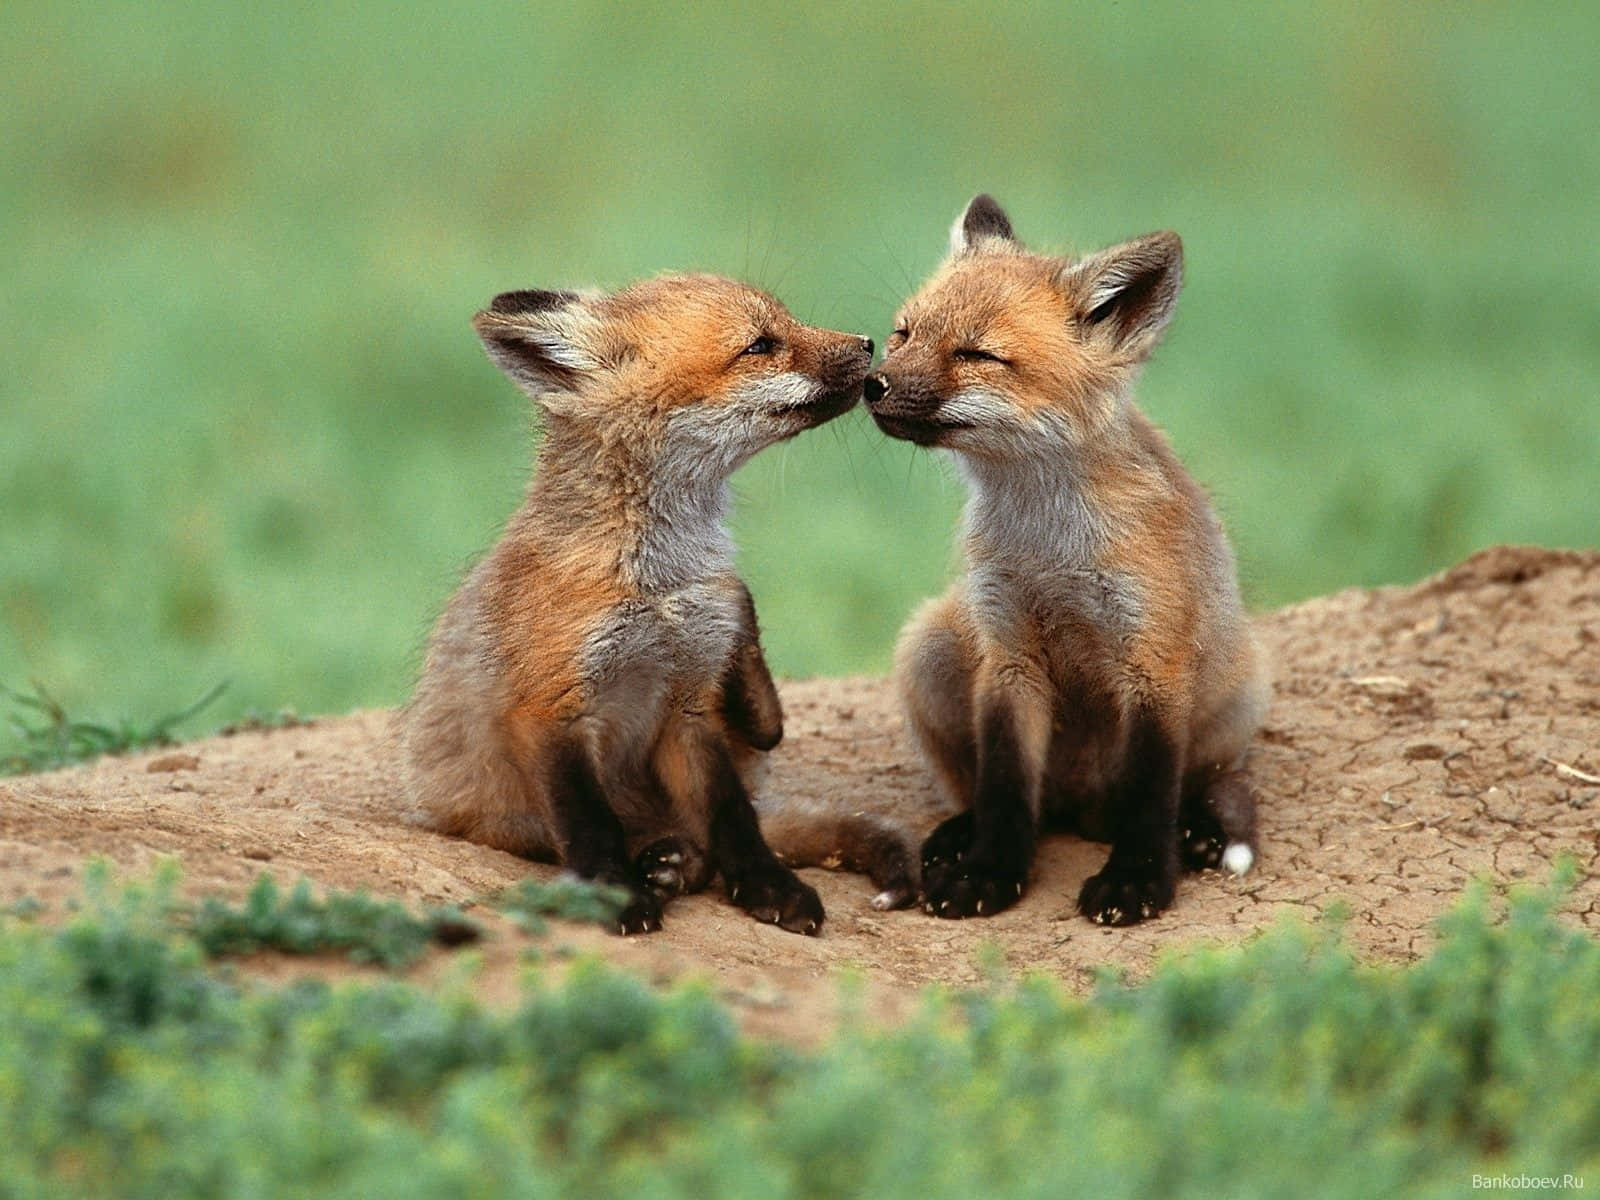 Sweet as Sugar - A Cute Fox